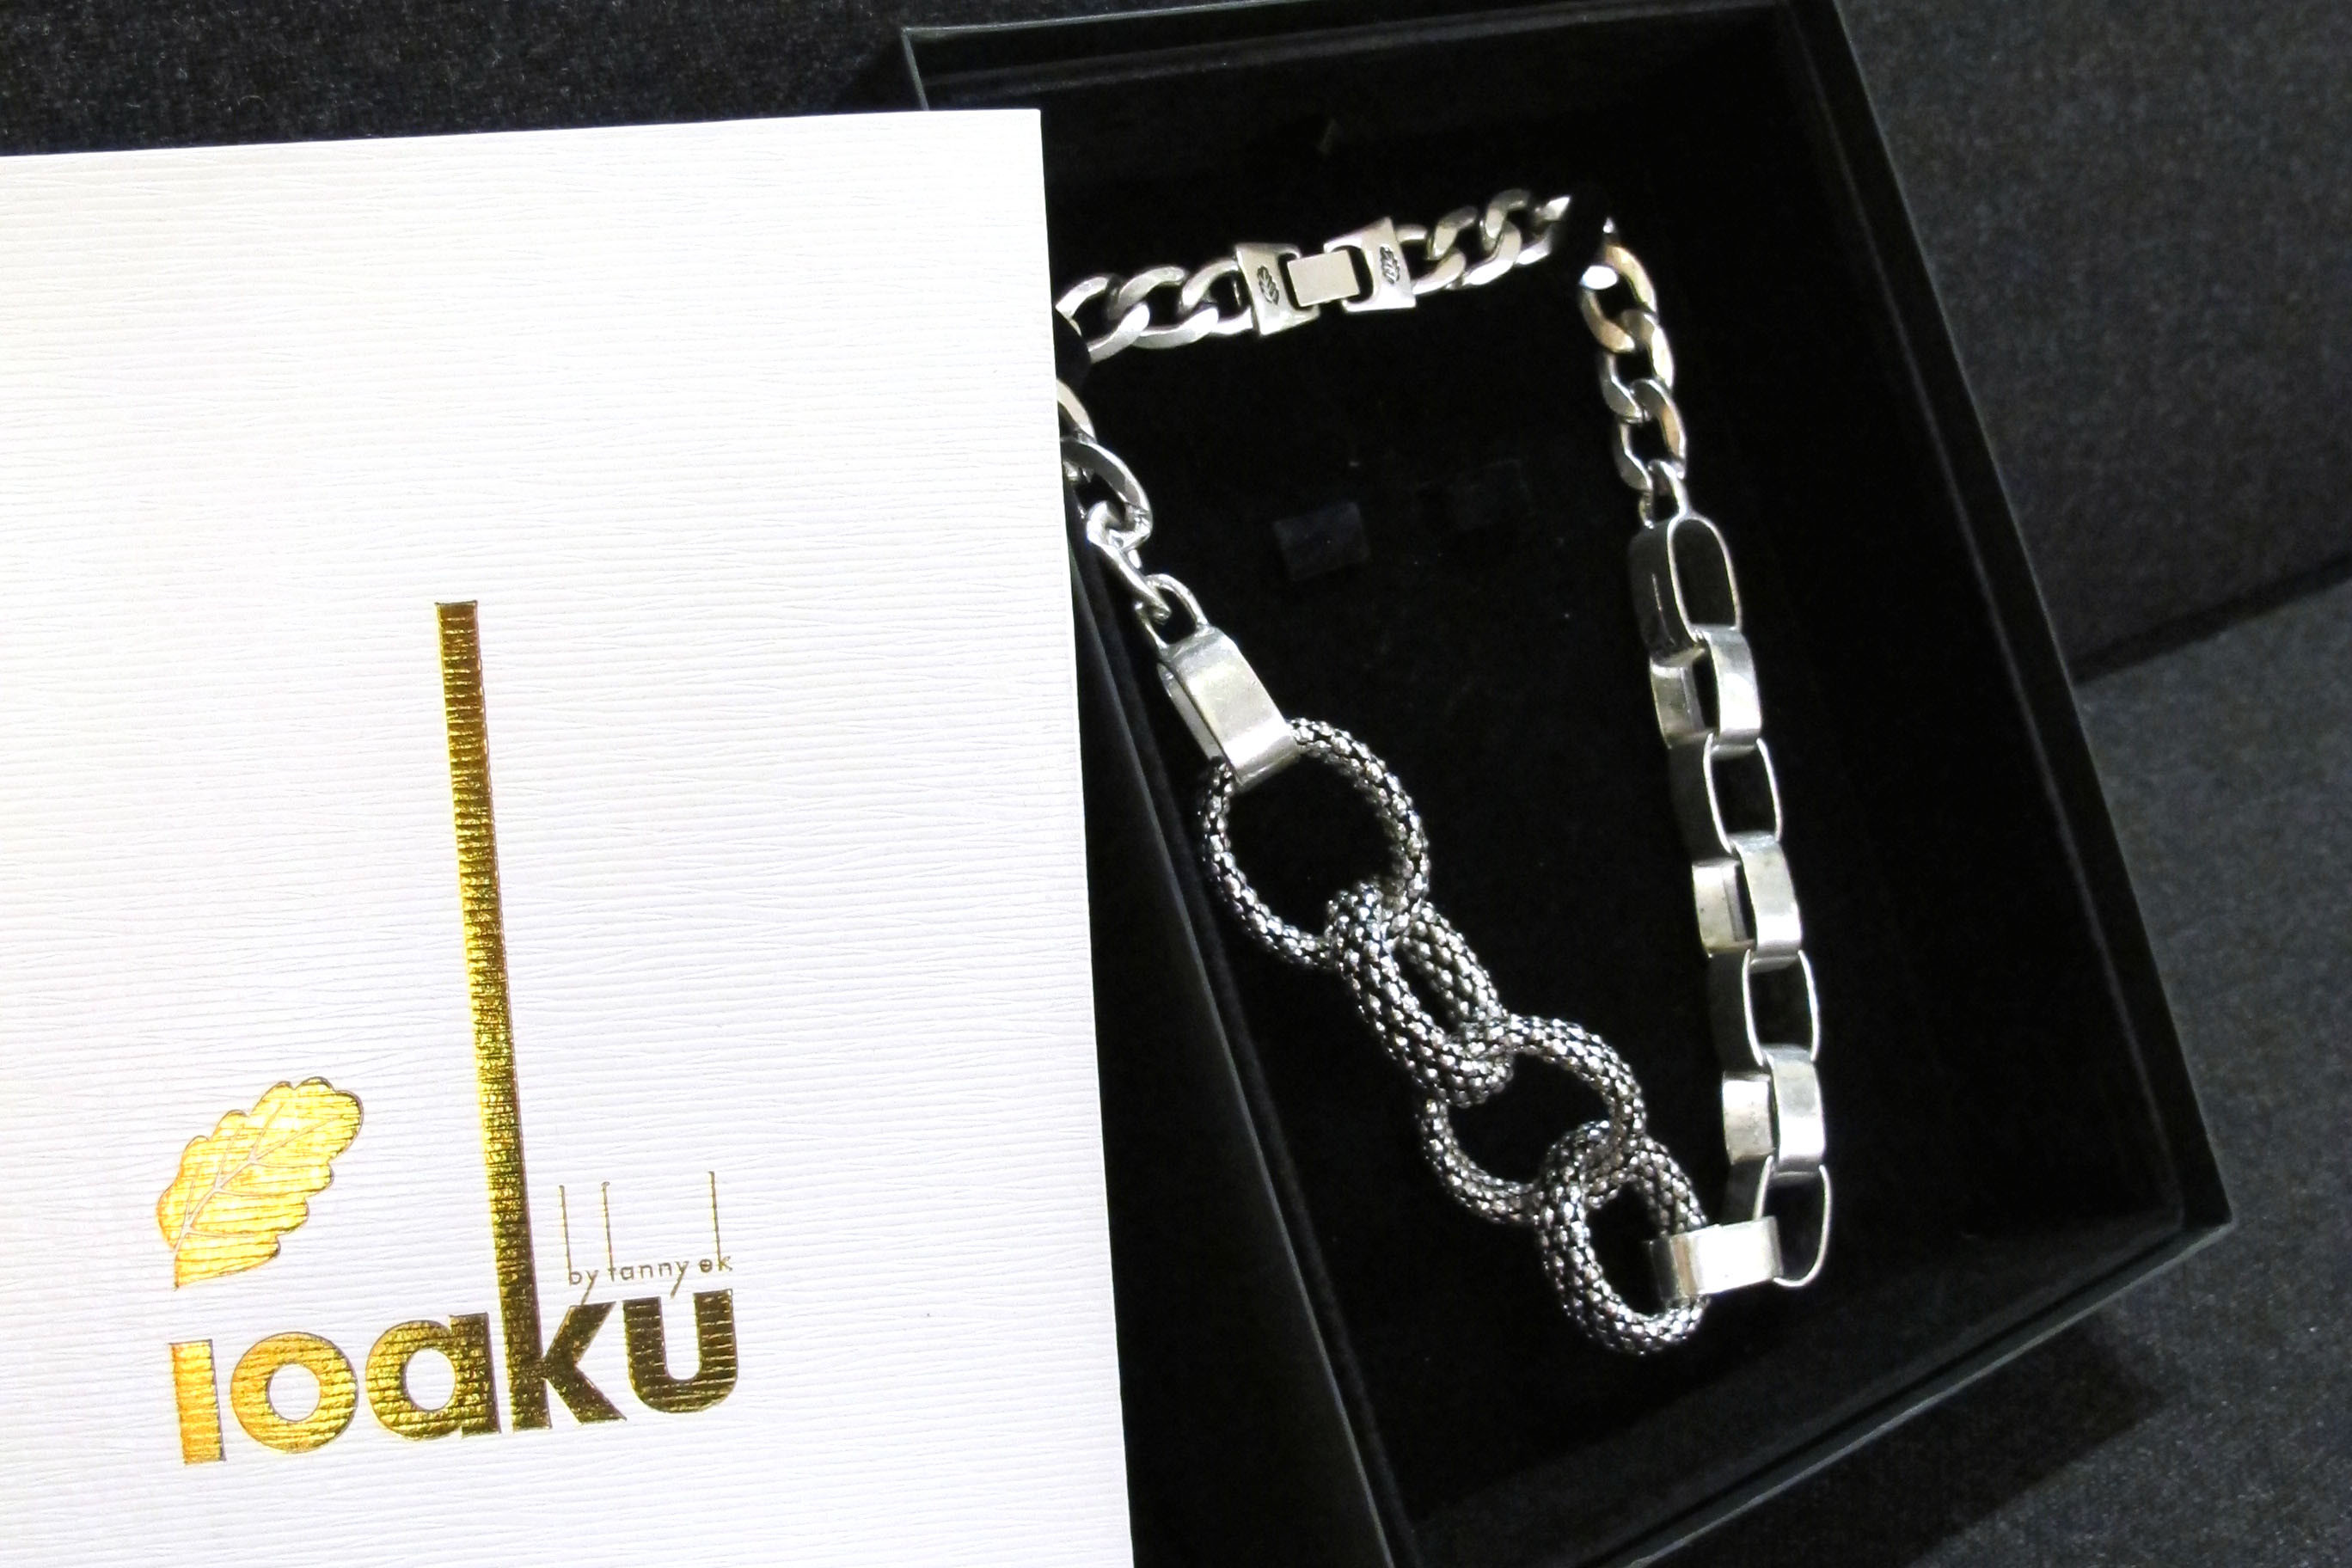 Lonk of life silver necklace Ioaku by Fanny Ek